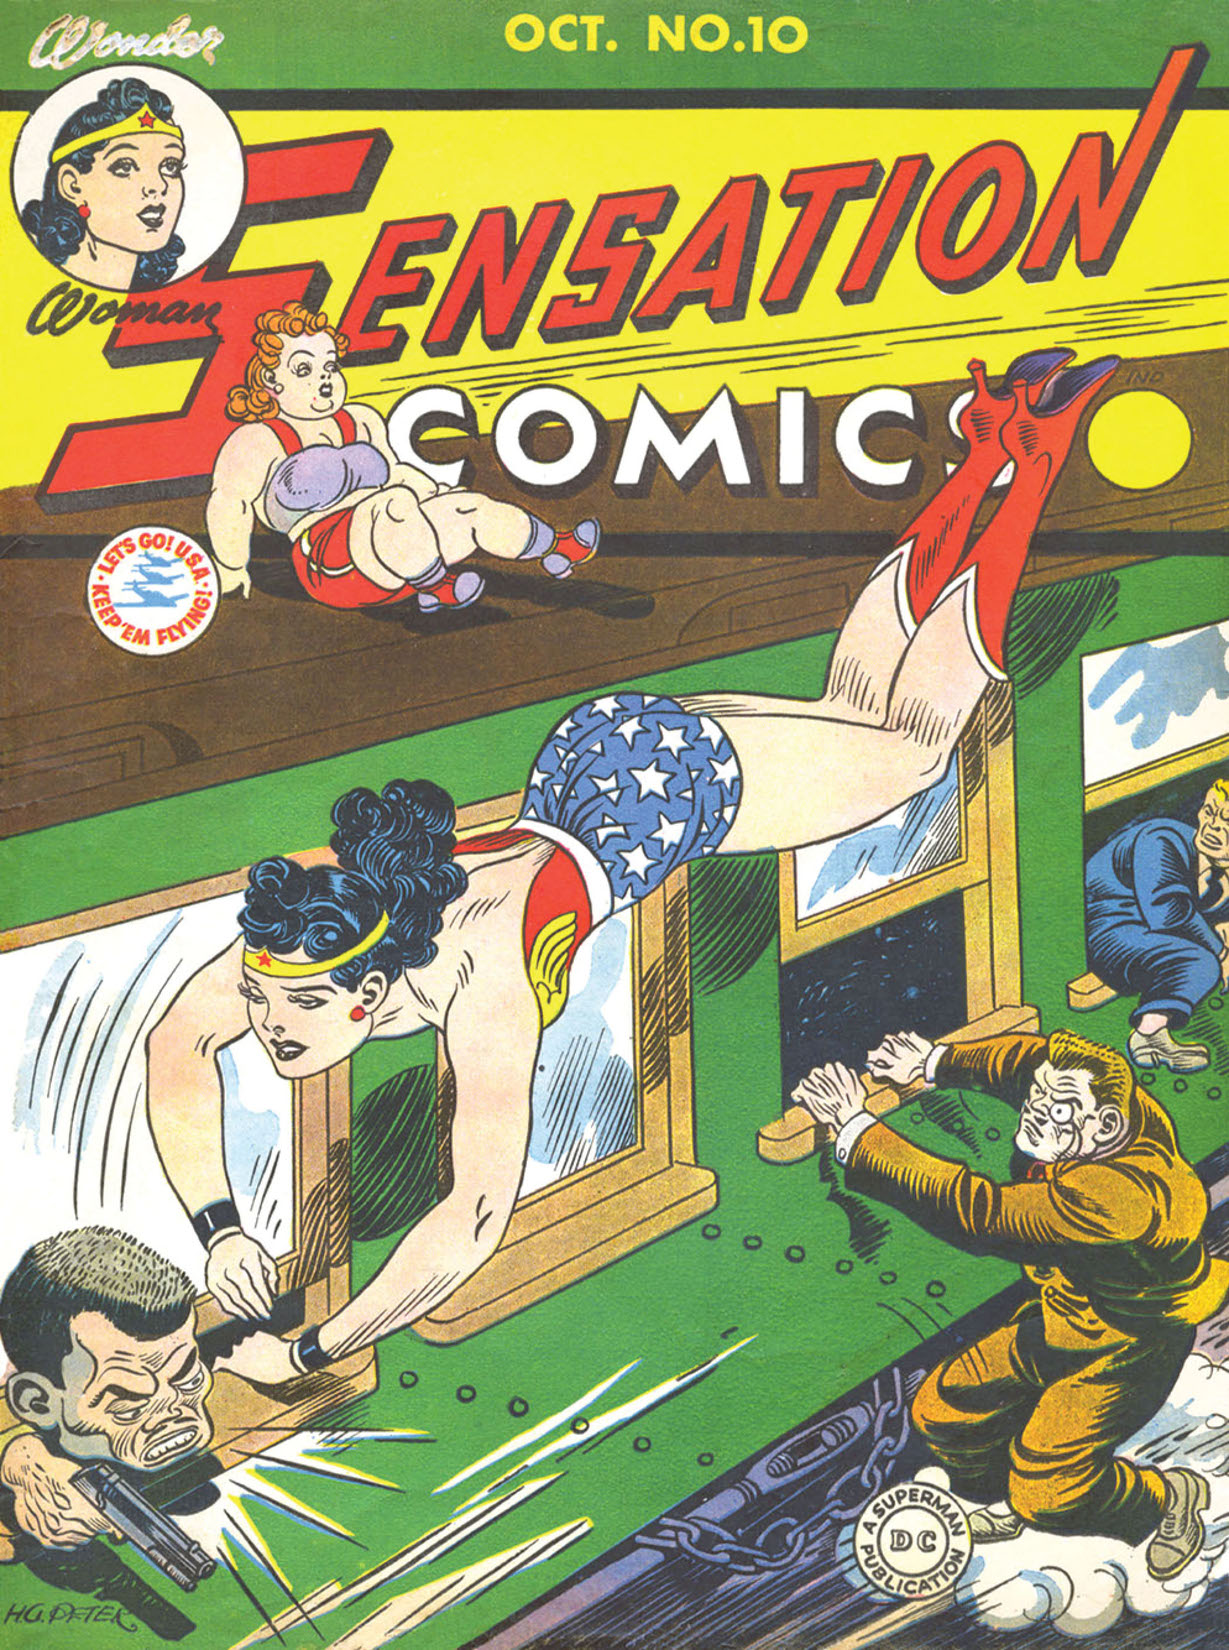 Sensation Comics #10 preview images